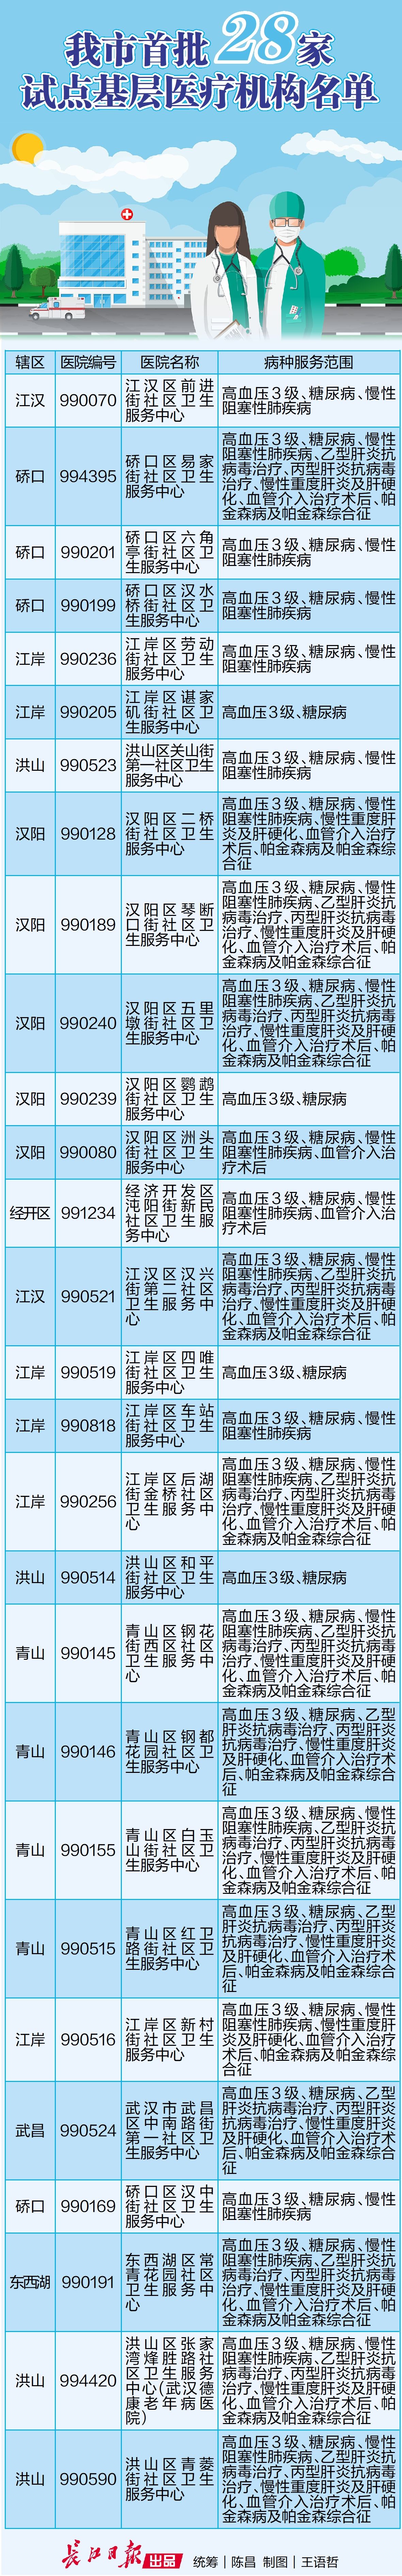 武汉首批28家试点基层医疗机构名单来了